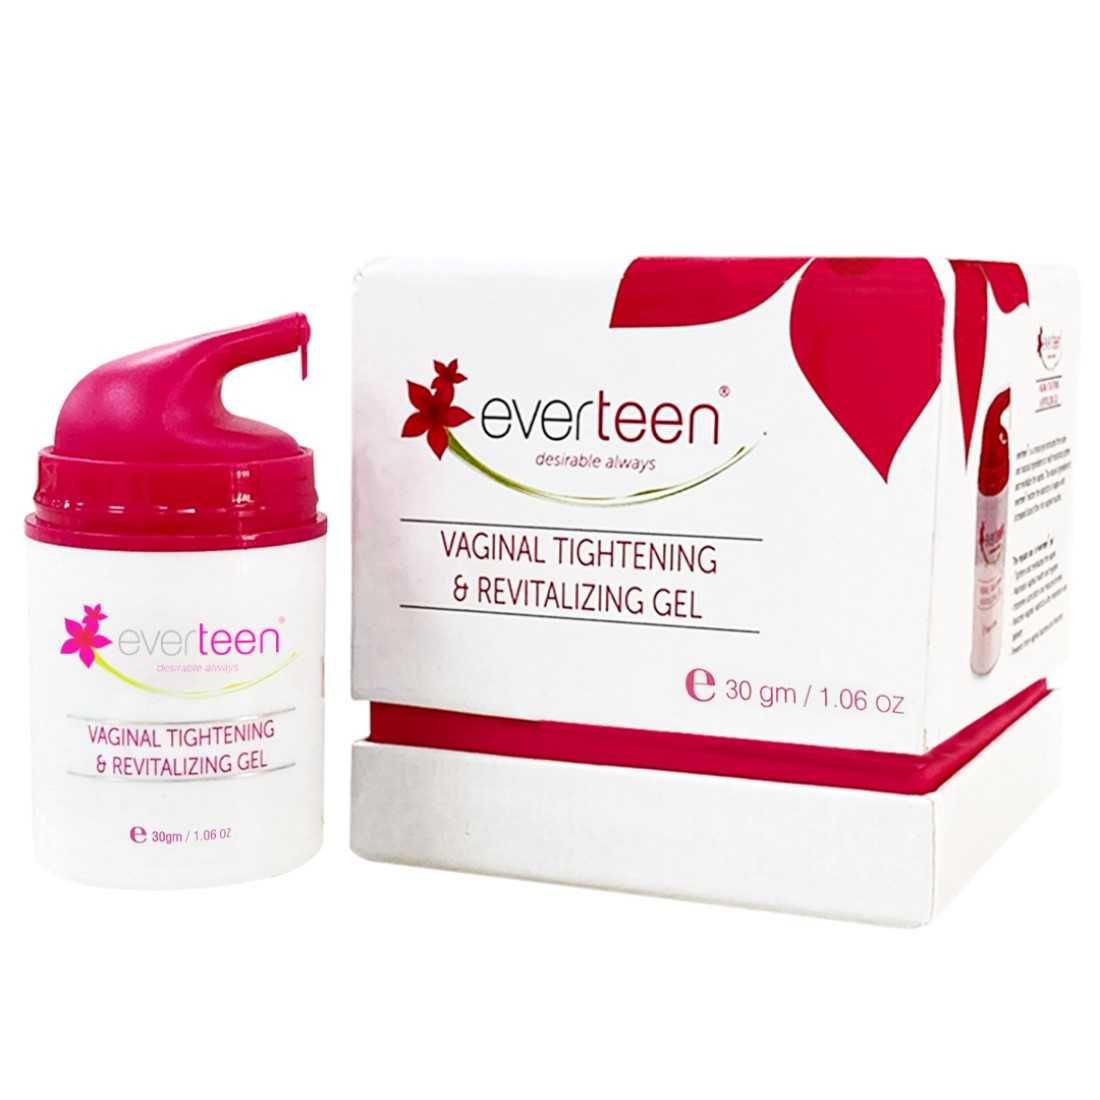 Everteen Vaginal Tightening Revitalizing Gel Buy Everteen Vaginal